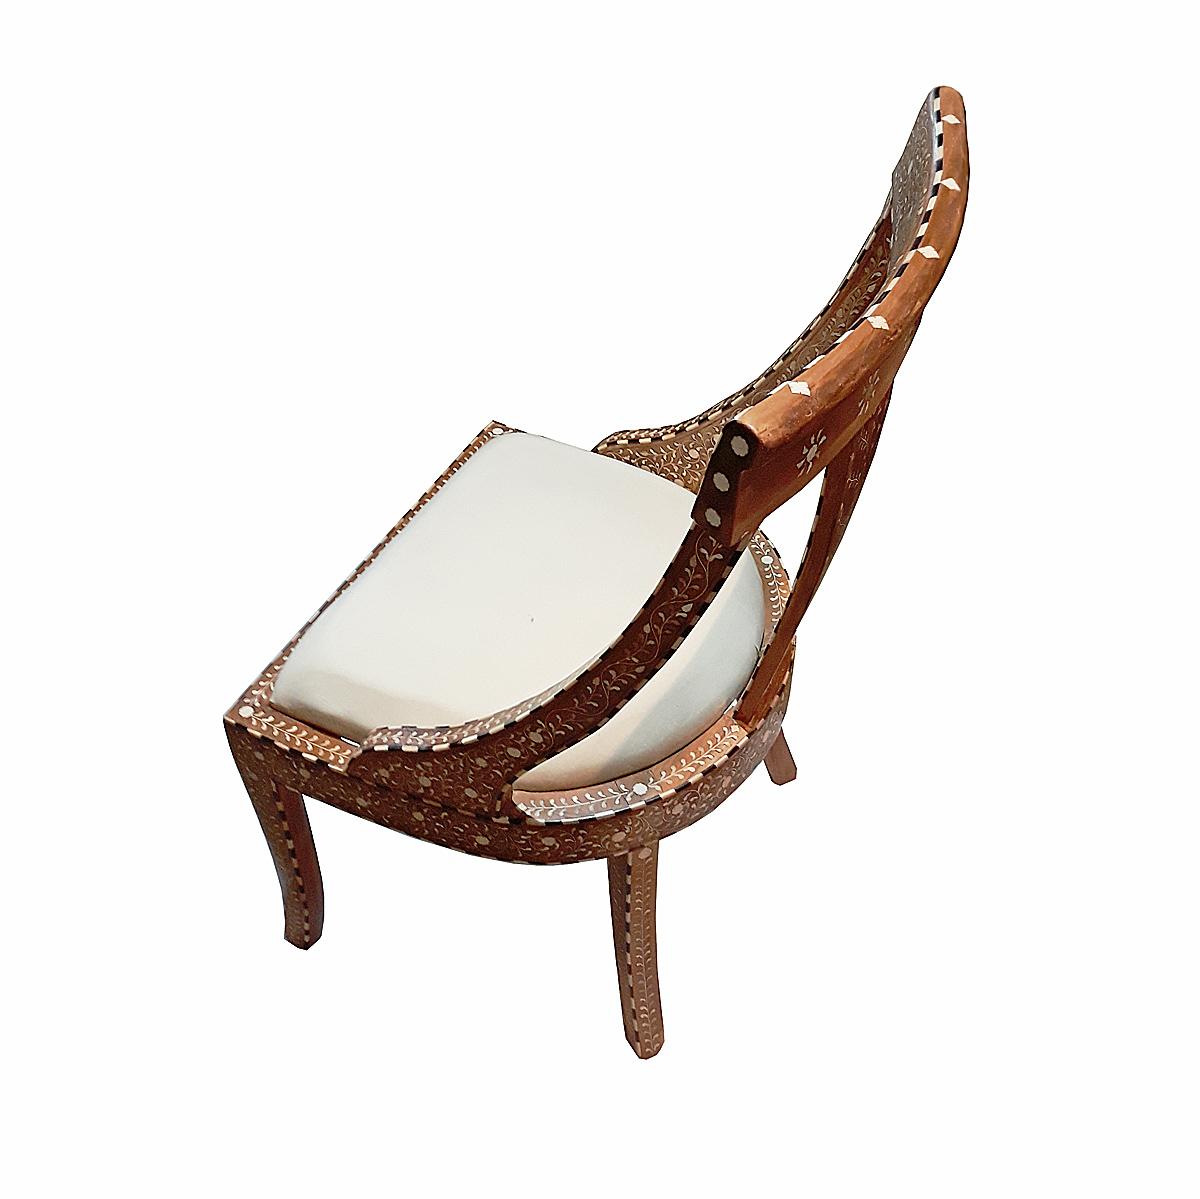 Bone-Inlaid Armless Chair with Cushion 1